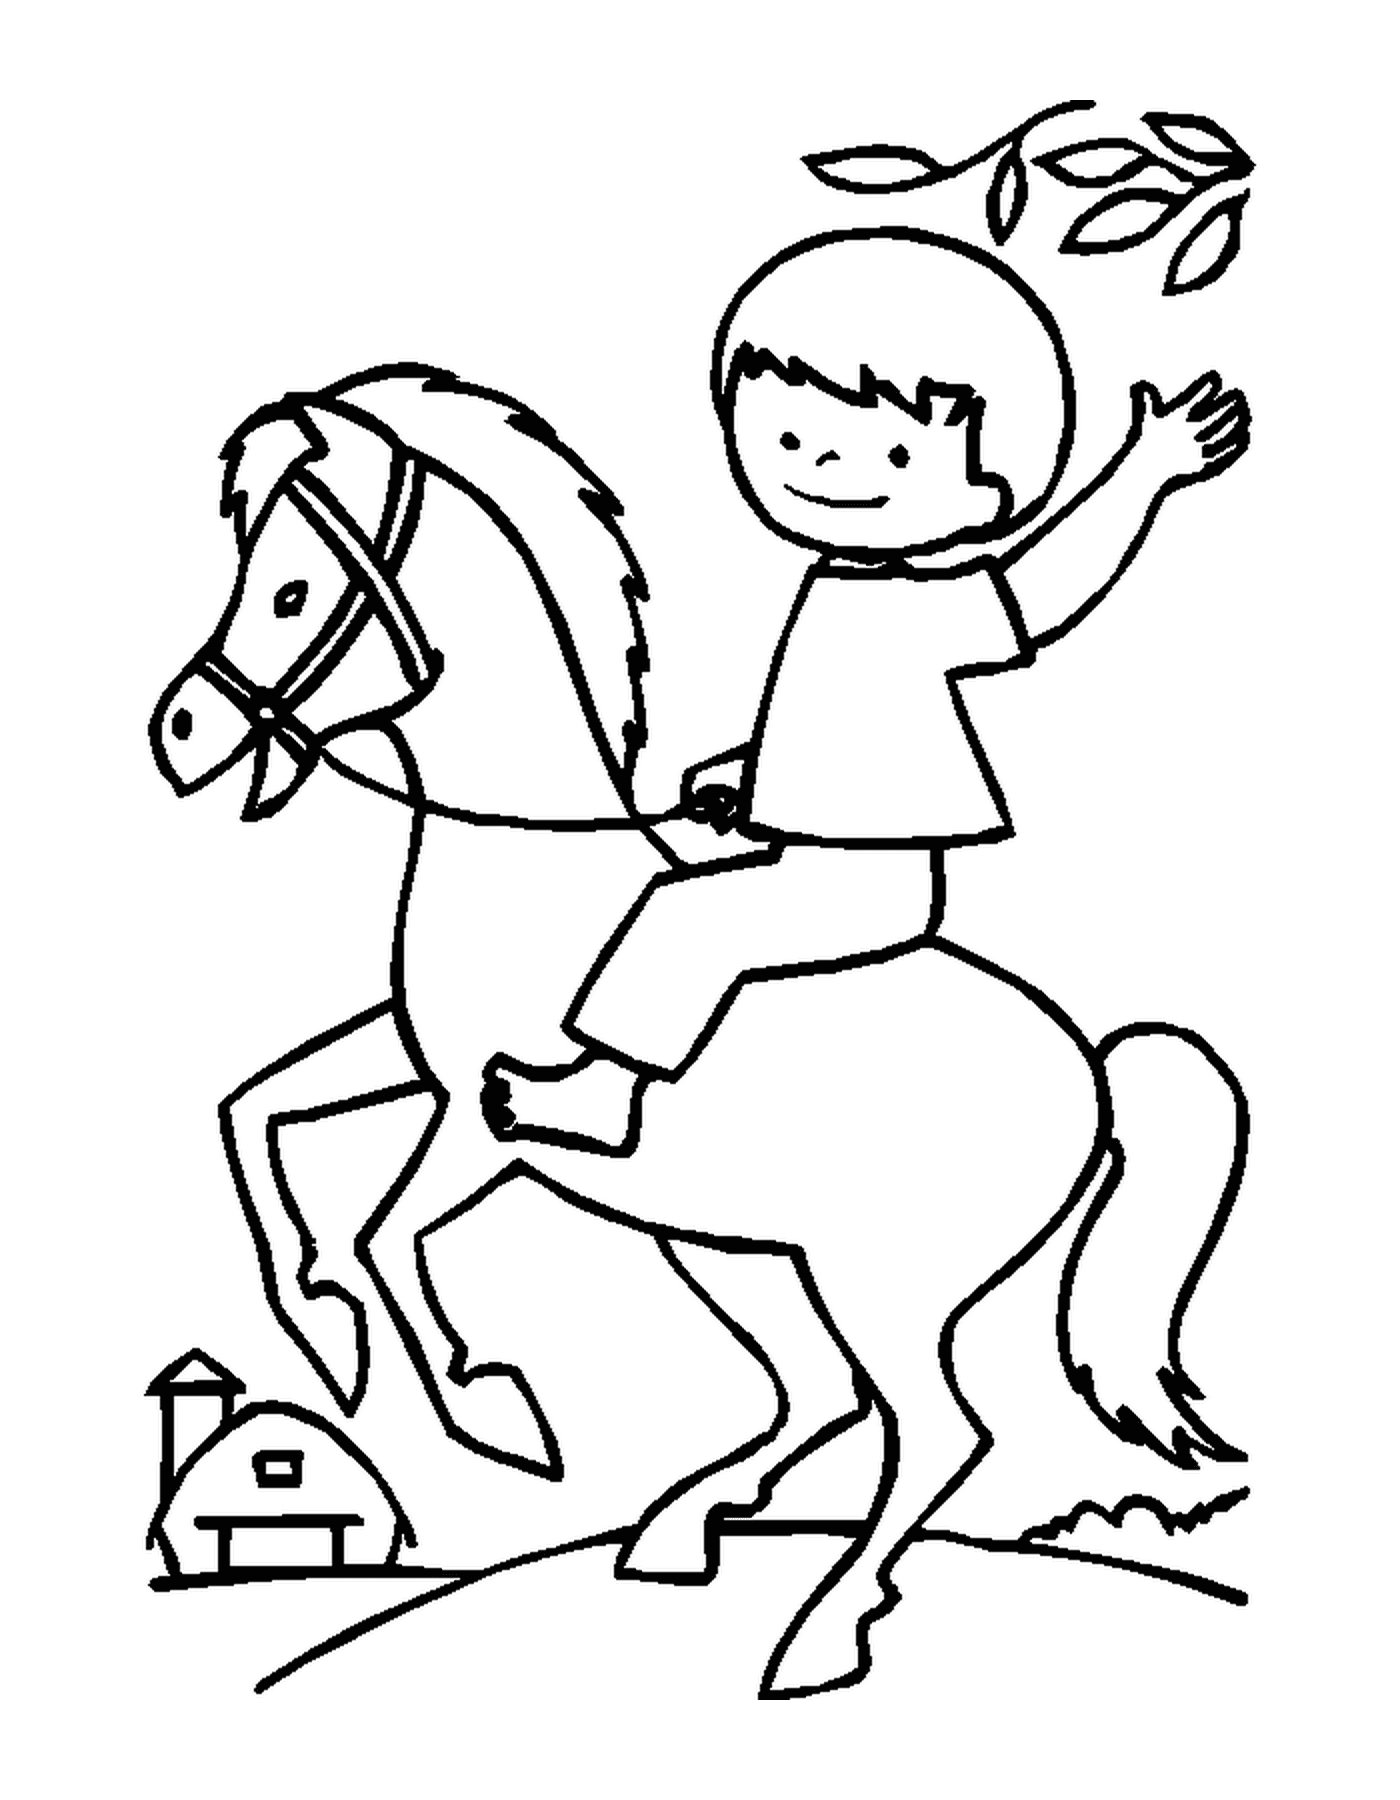  Bambino cavalcando il suo cavallo felicemente tenendo le redini 